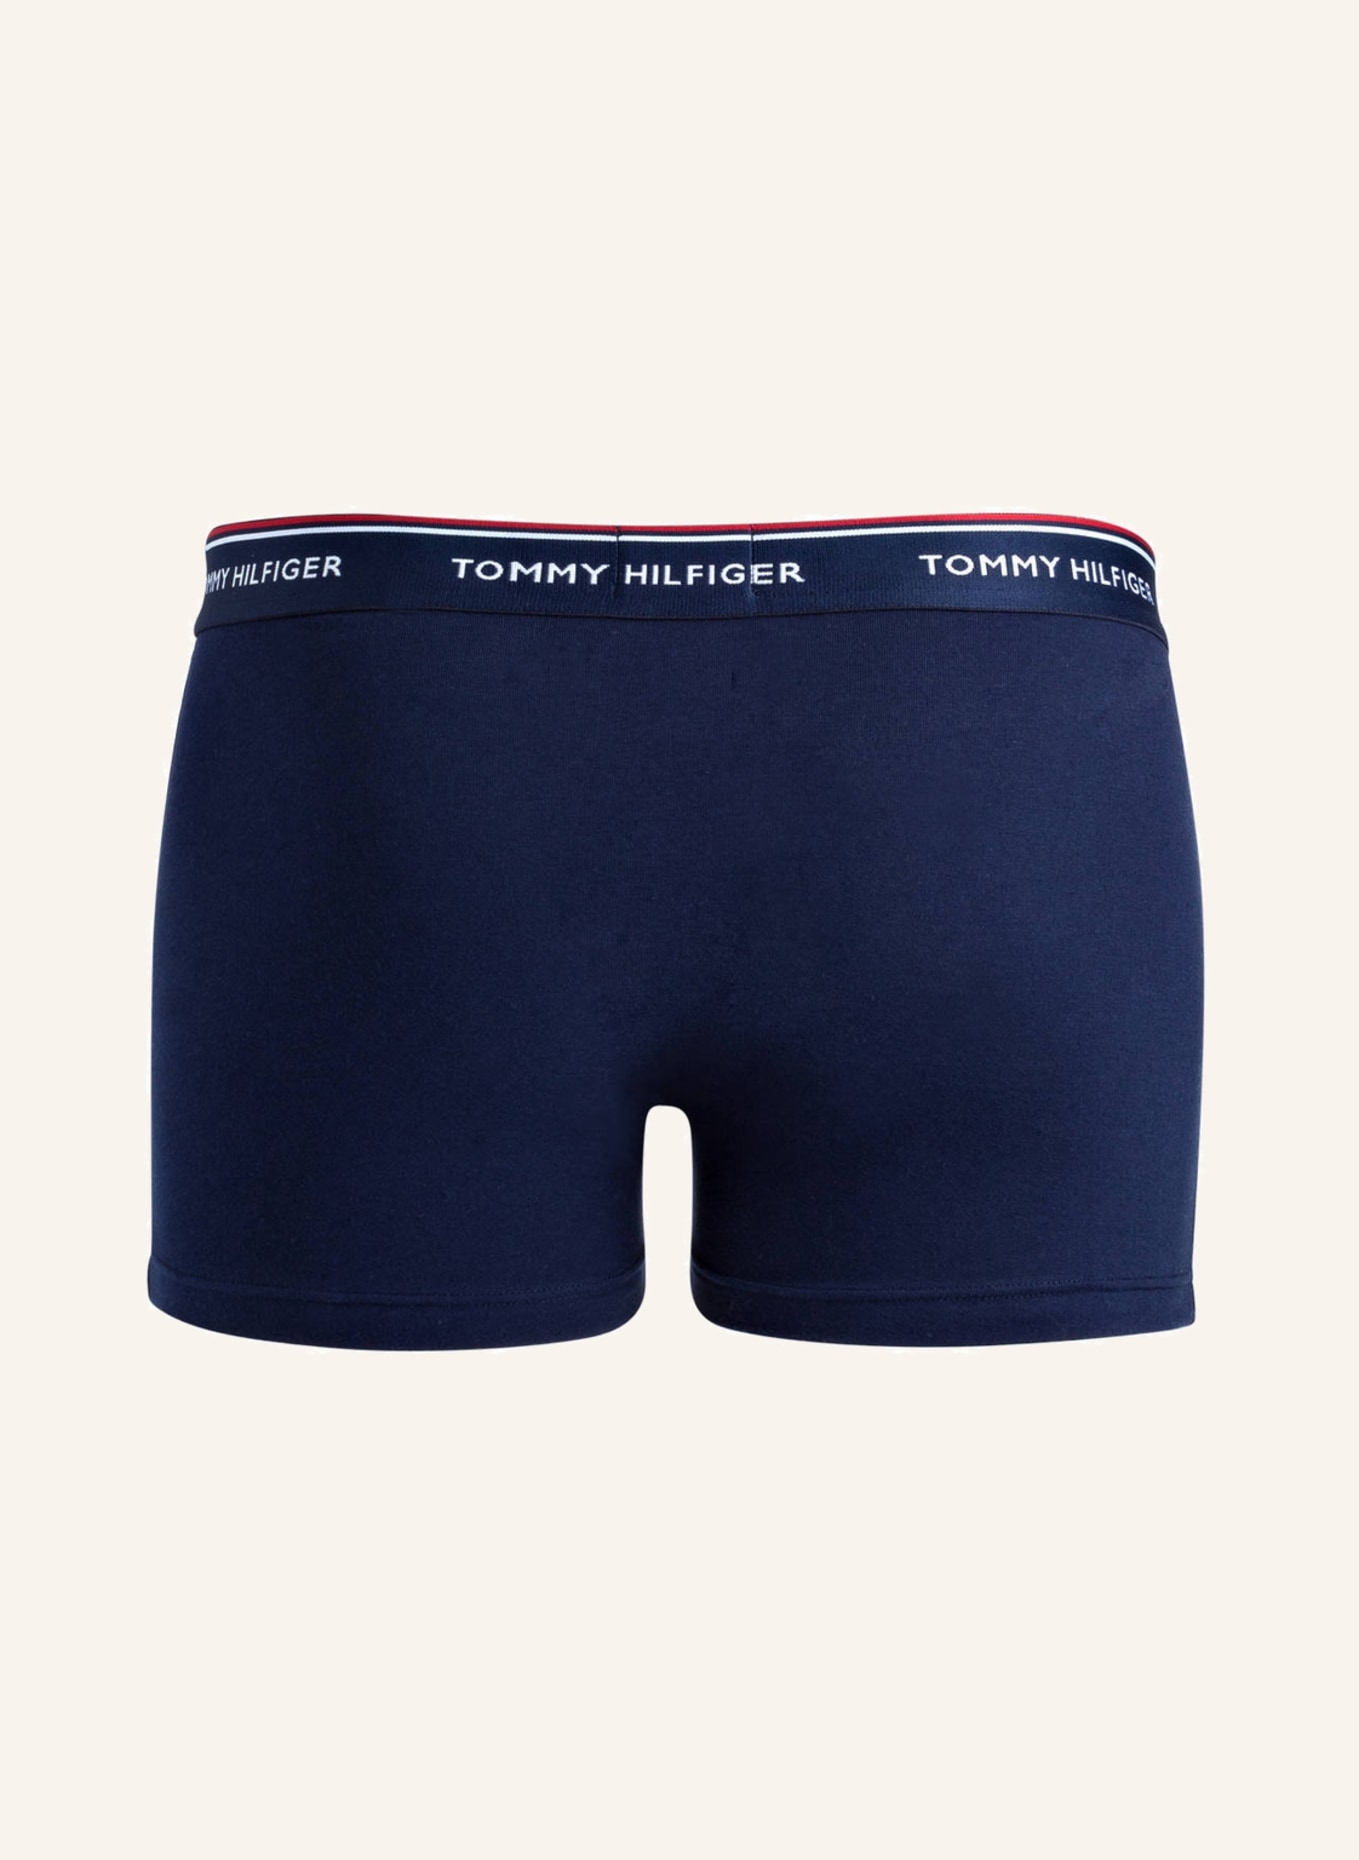 TOMMY HILFIGER 3er-Pack Boxershorts, Farbe: NAVY (Bild 2)